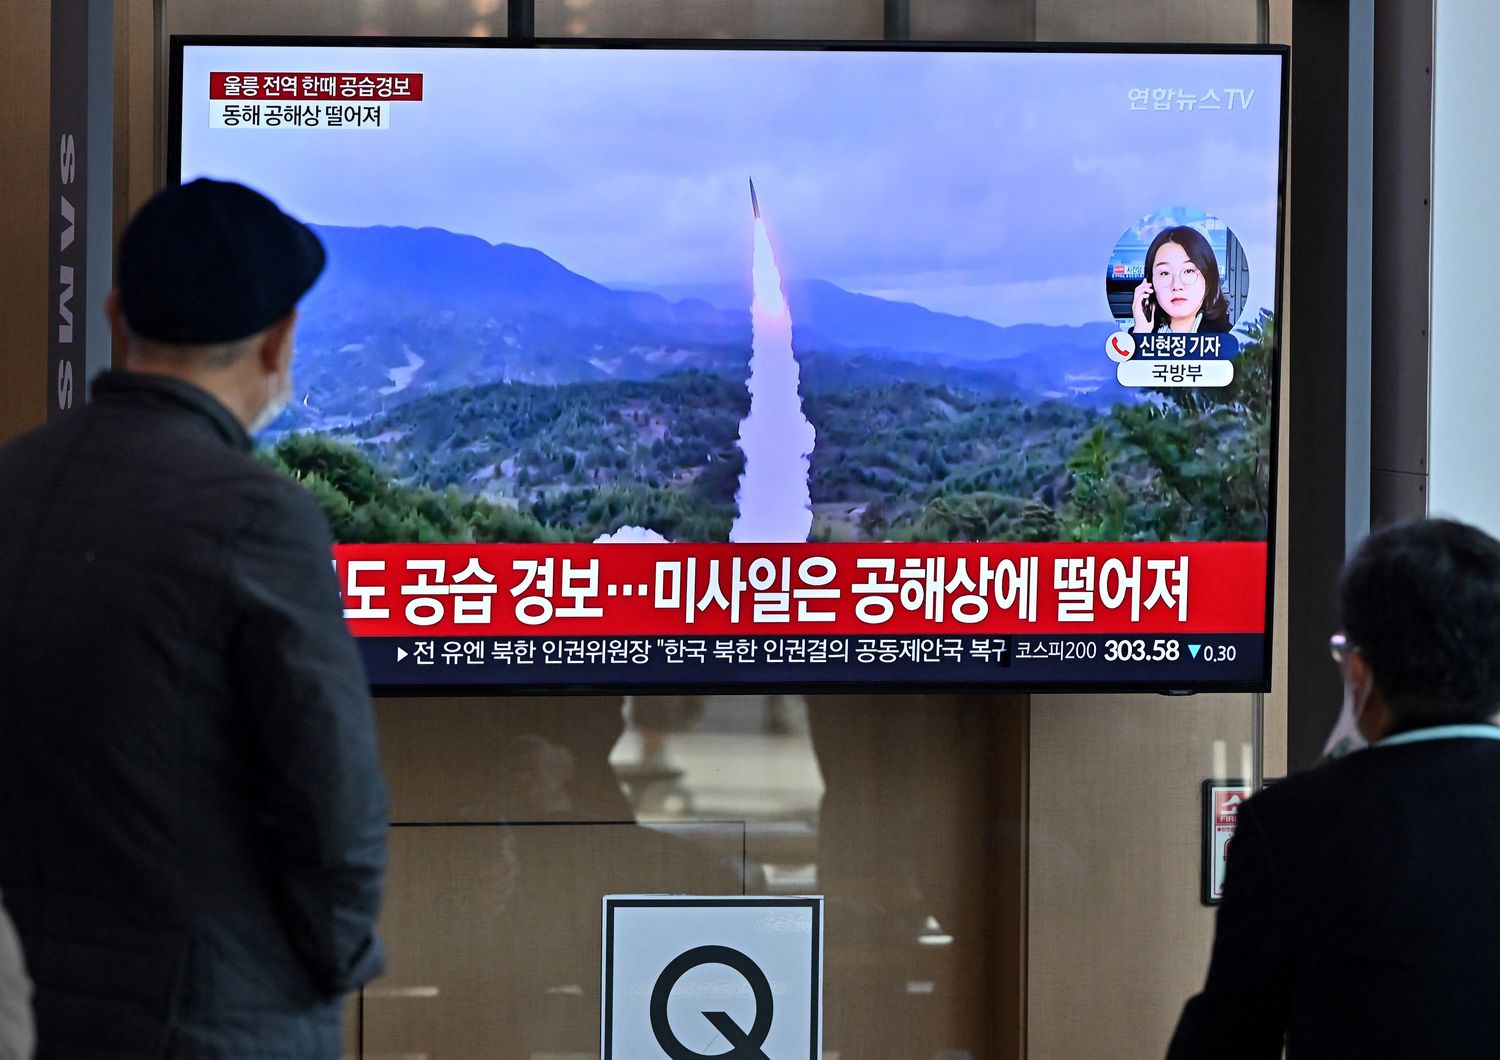 Lancio di un missile dalla Corea del Nord